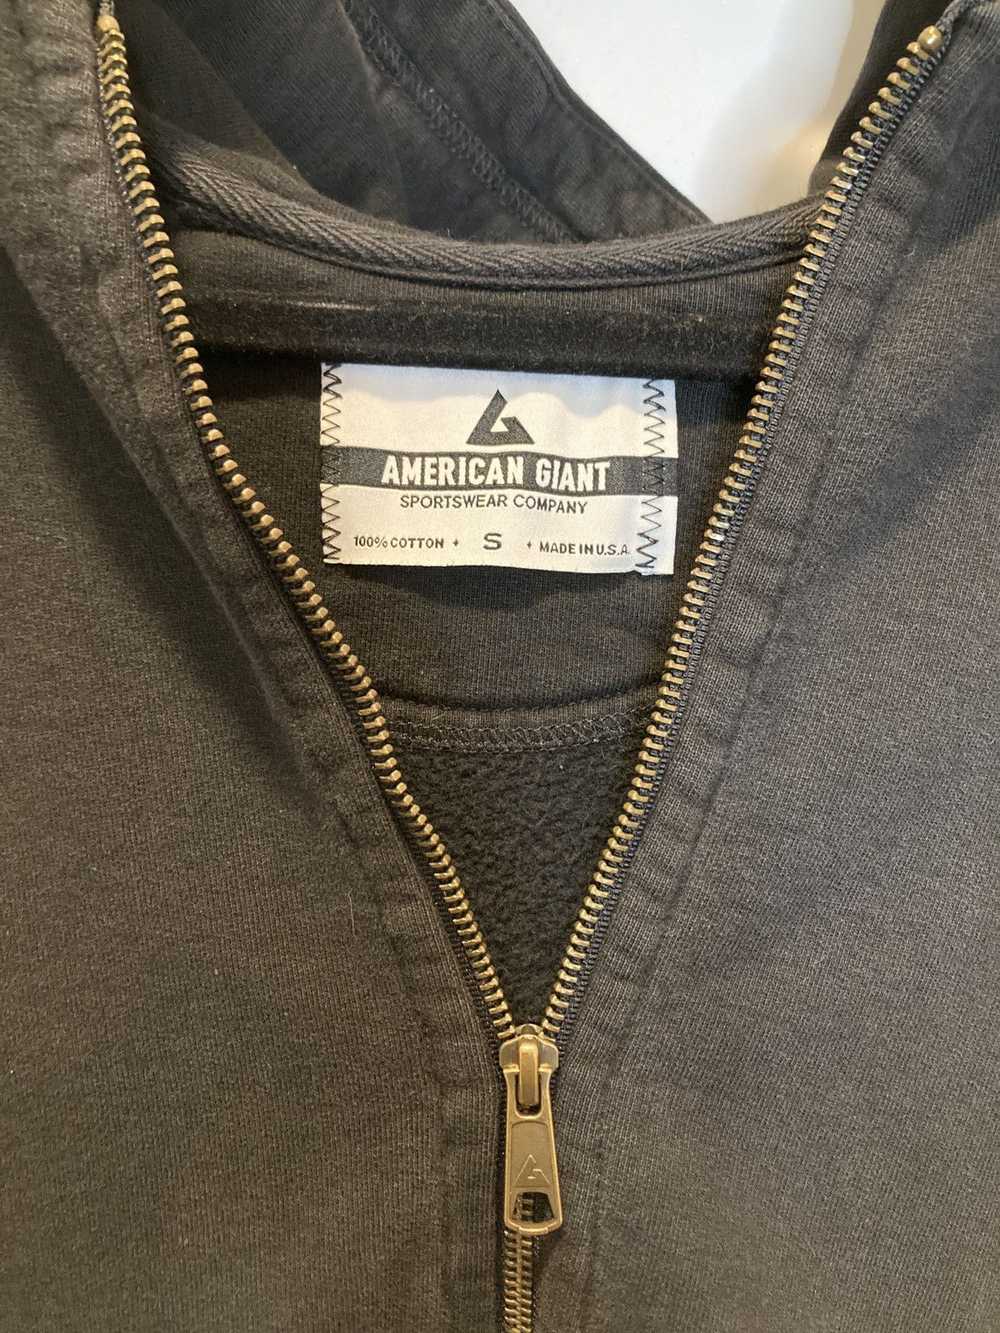 American Giant American Giant zip up hoodie - image 2